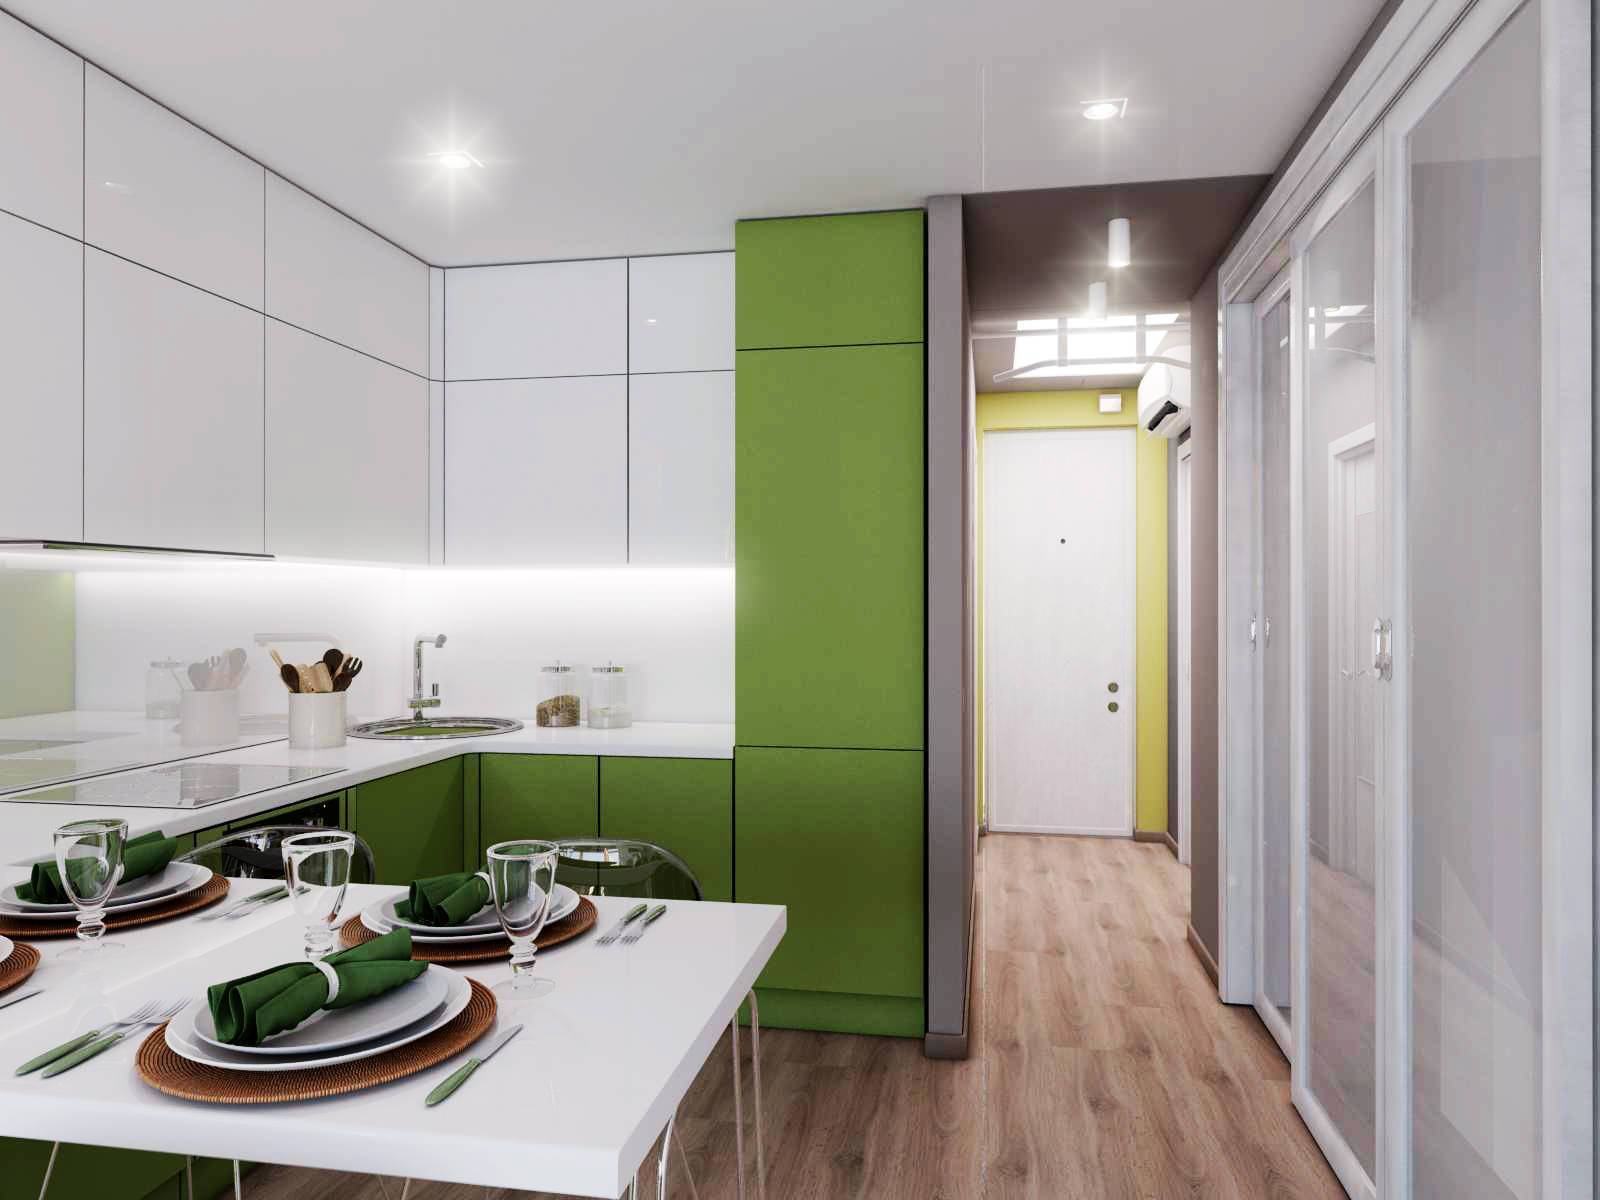 Кухня 13 кв м: дизайн интерьера и особенности планировки